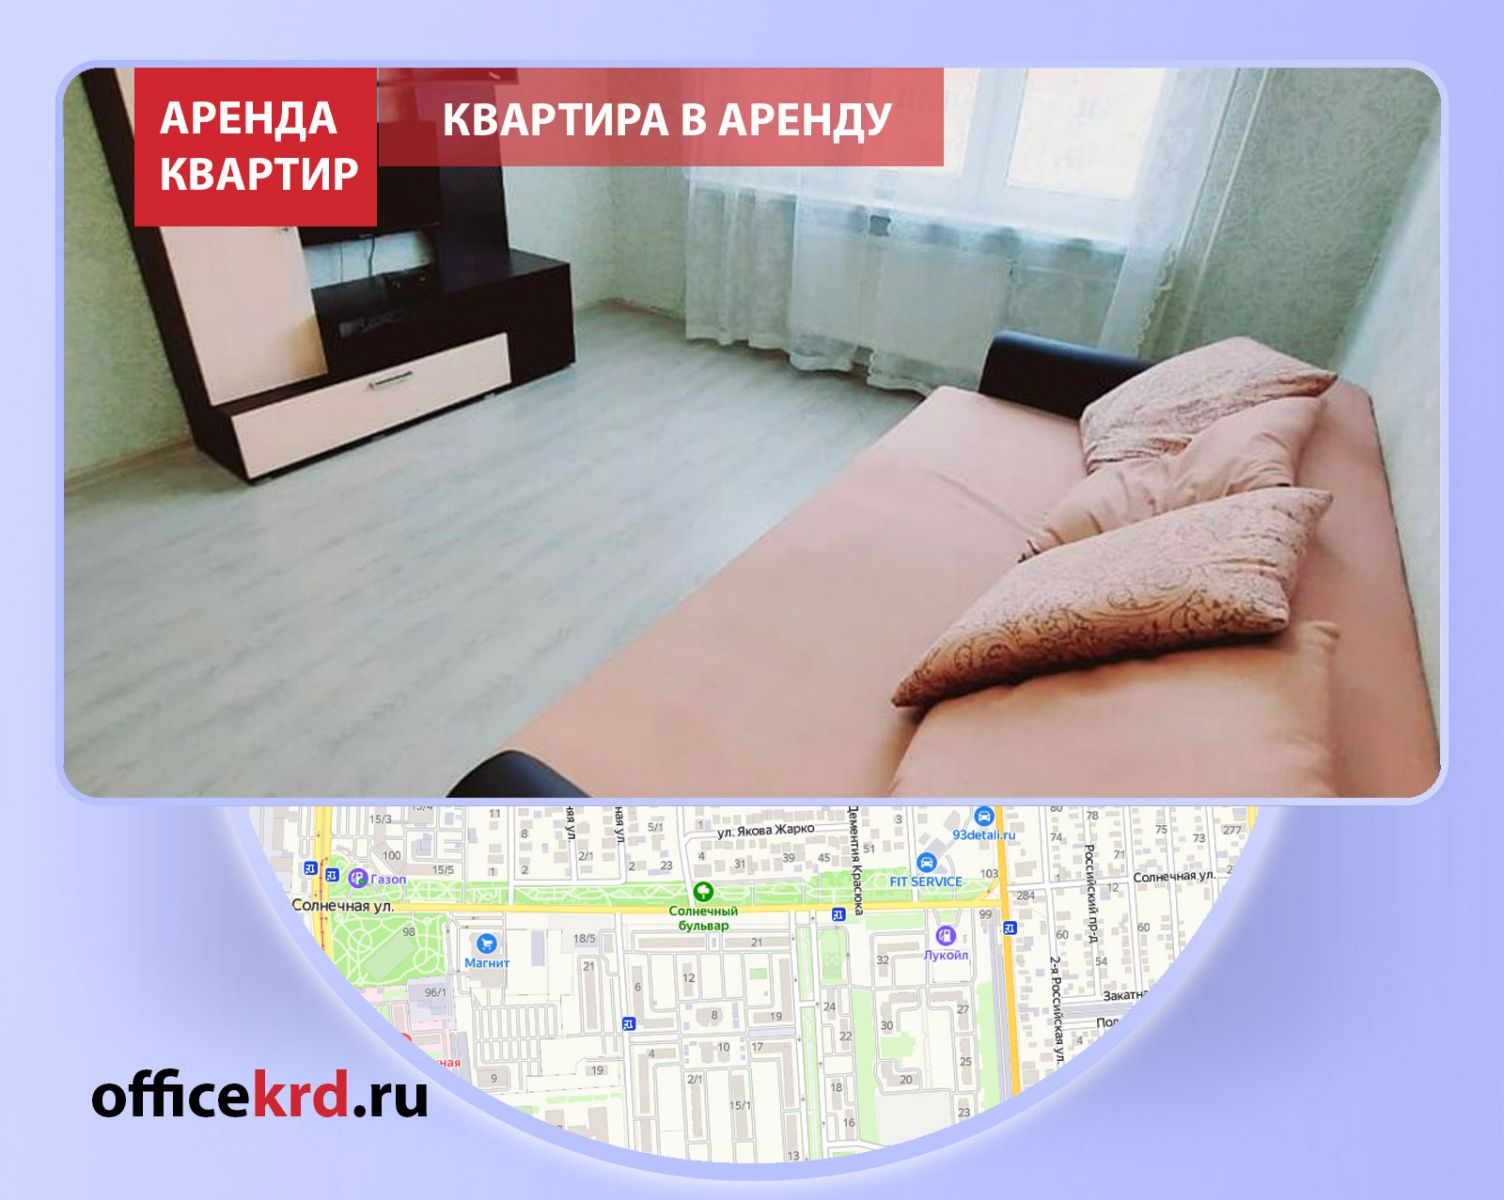 Снять квартиру для молодой семьи, аренда квартиры без посредников в районе улицы Солнечной, арендовать квартиру на длительный срок Краснодар